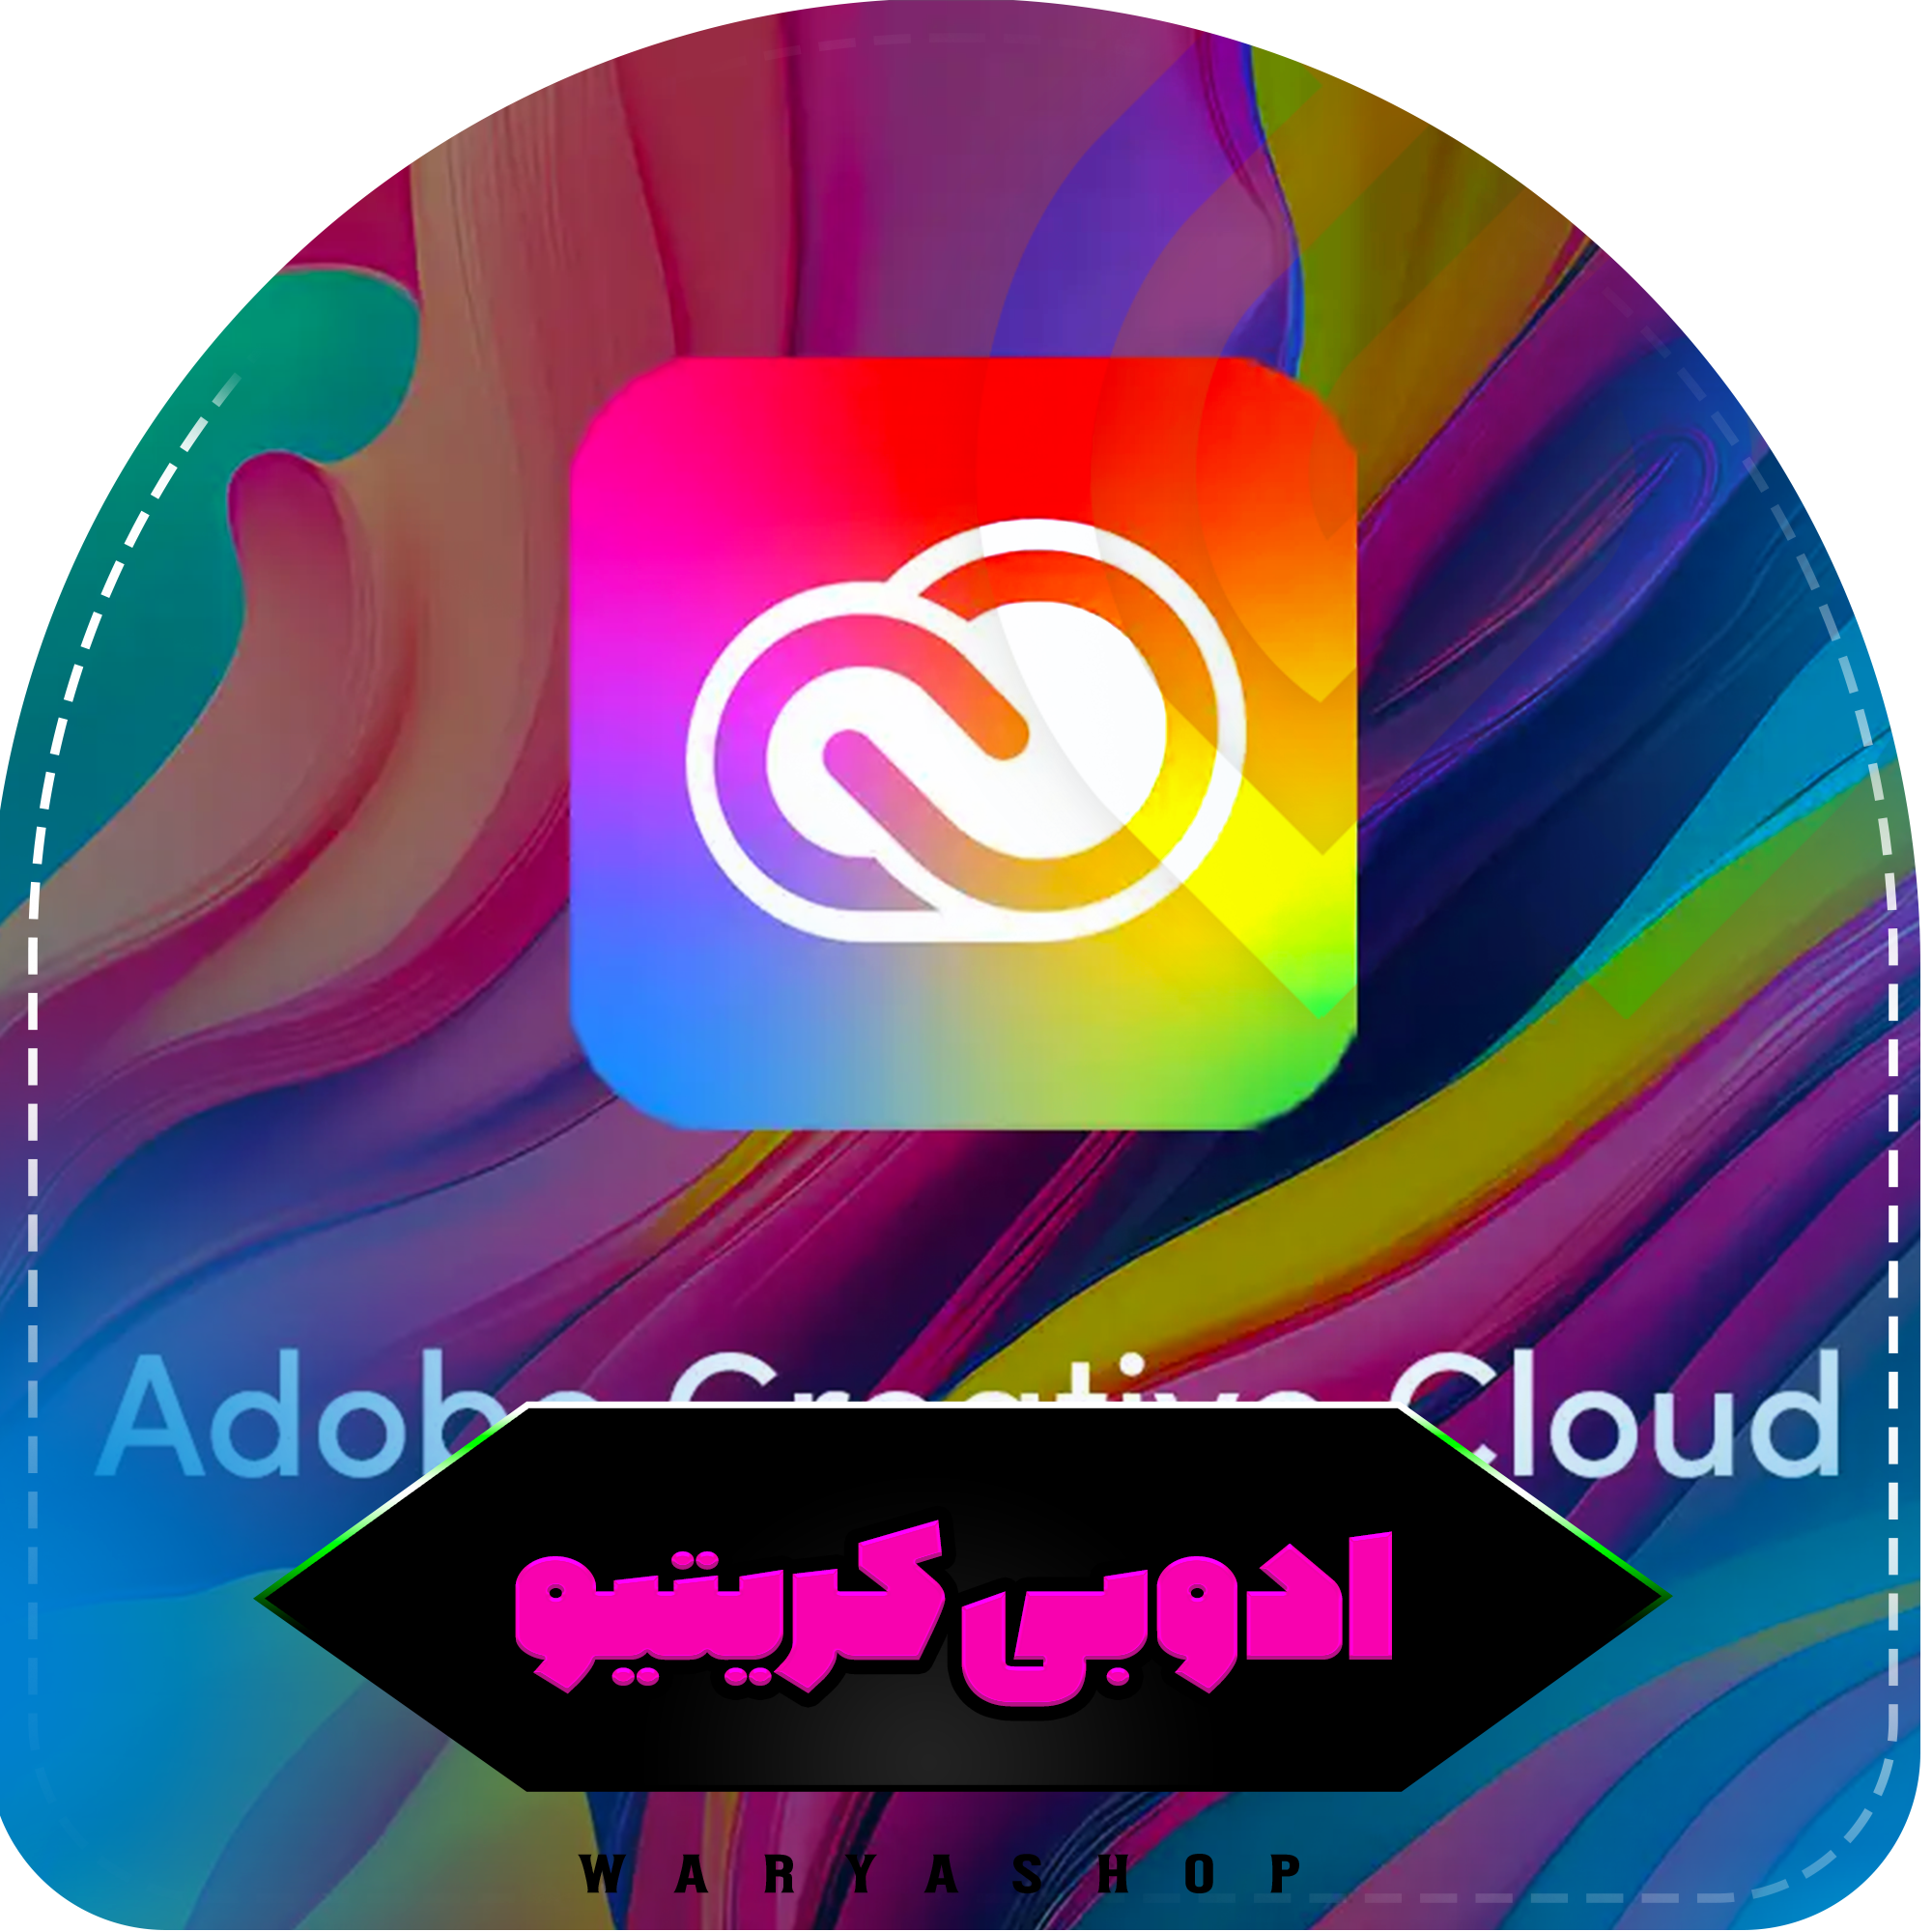 خرید اکانت ادوبی کریتیو 20 گیگ یک ماهه Adobe Creative Cloud روی ایمیل شما (ارزان)